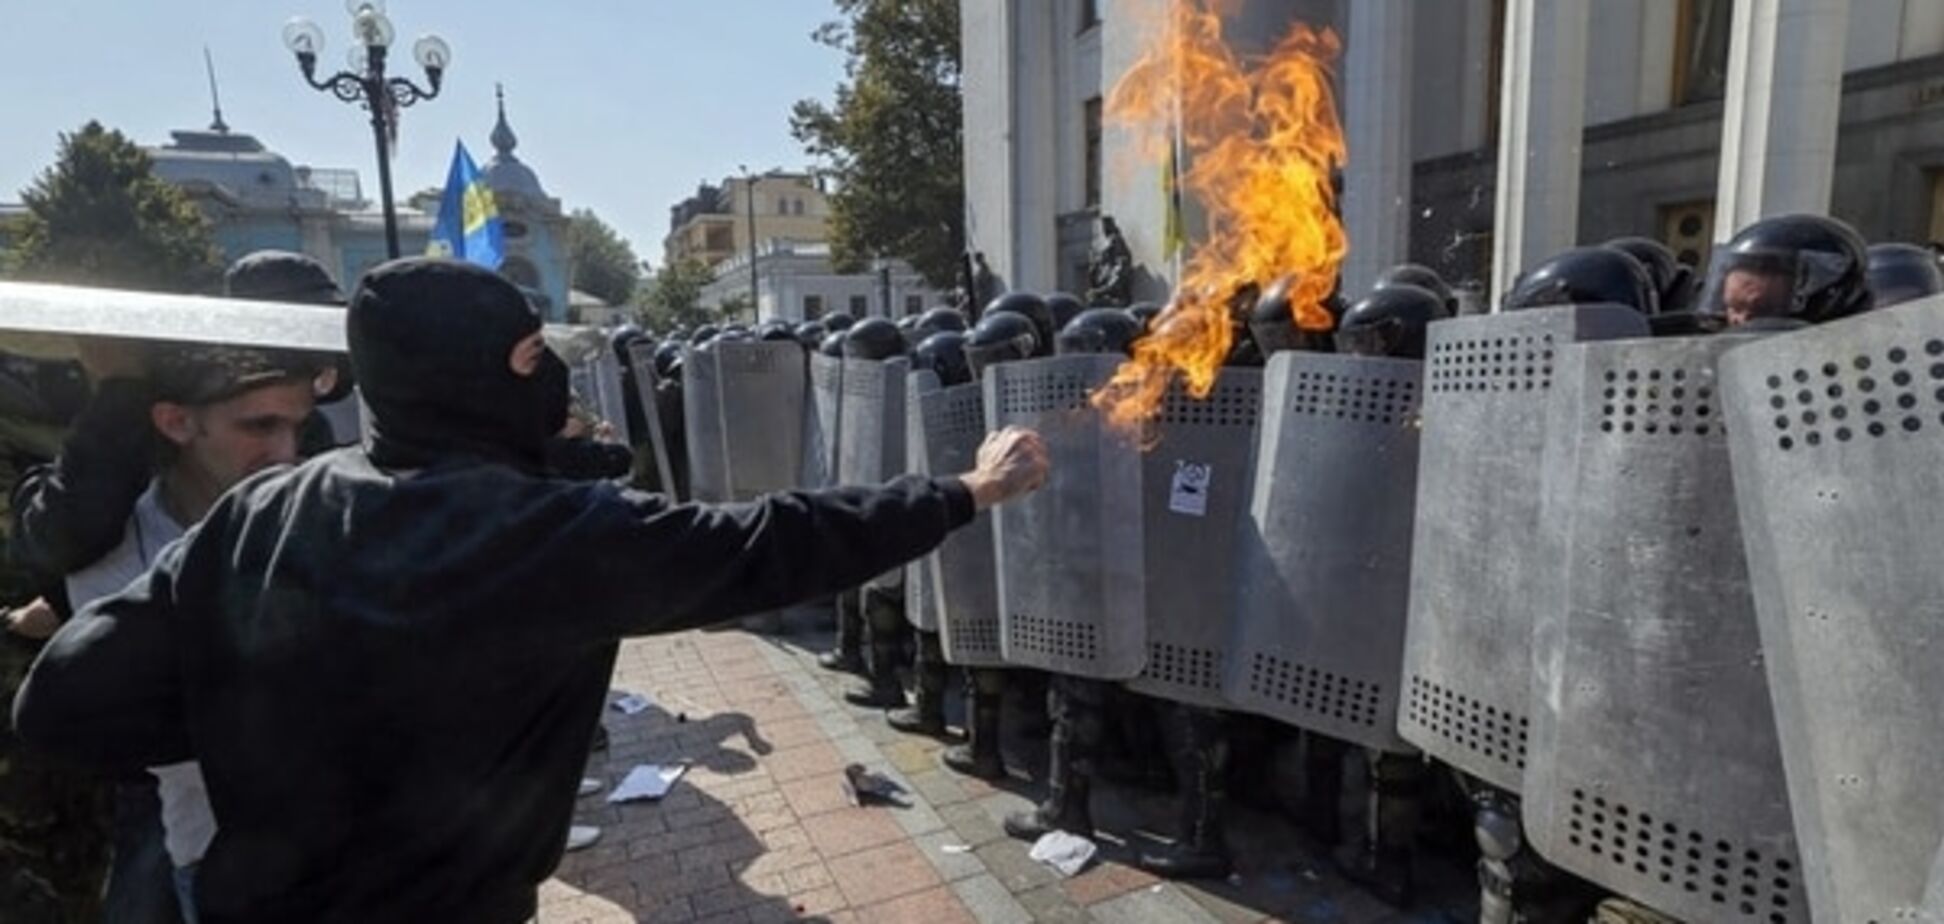 УКРОП: на митинге под Радой 3 ноября готовятся провокации